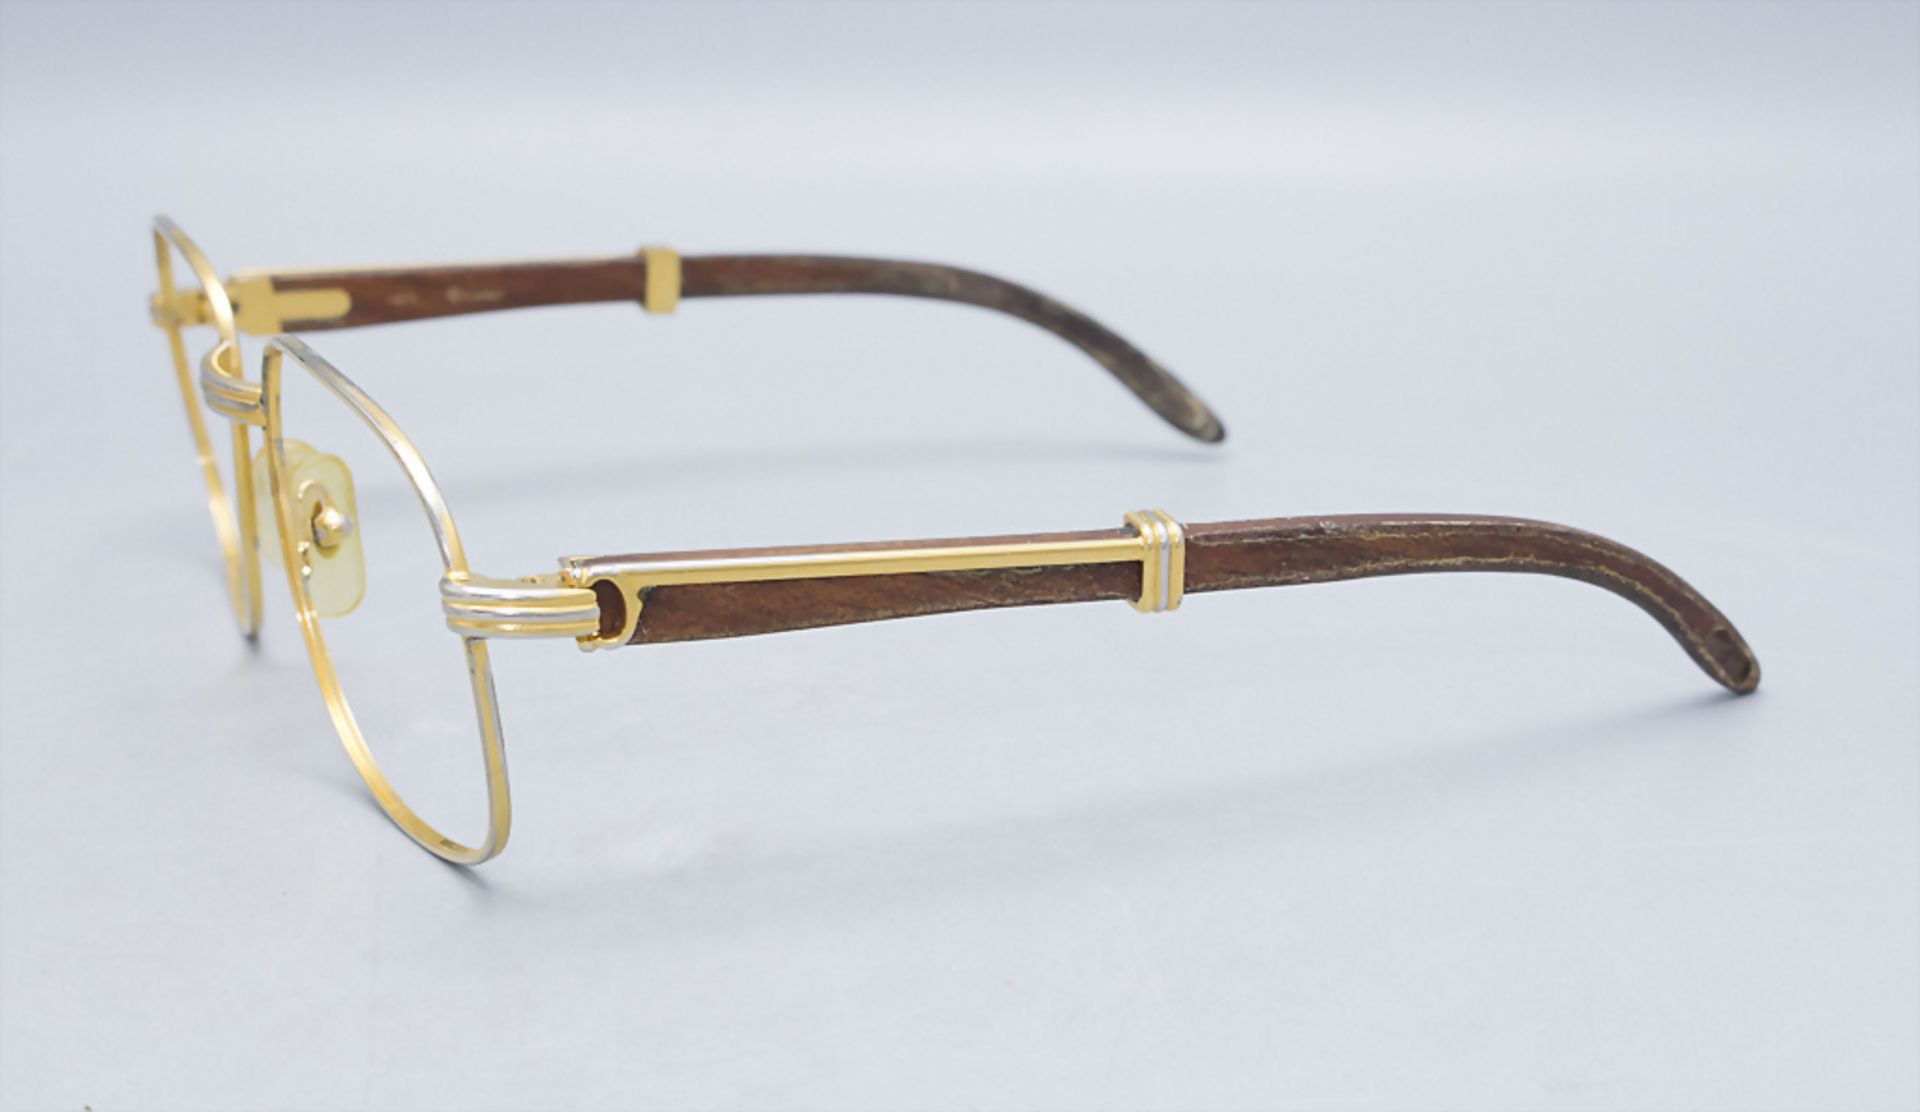 Brille / Lesebrille / Reading glasses, Cartier, Paris, um 1970 - Image 3 of 3